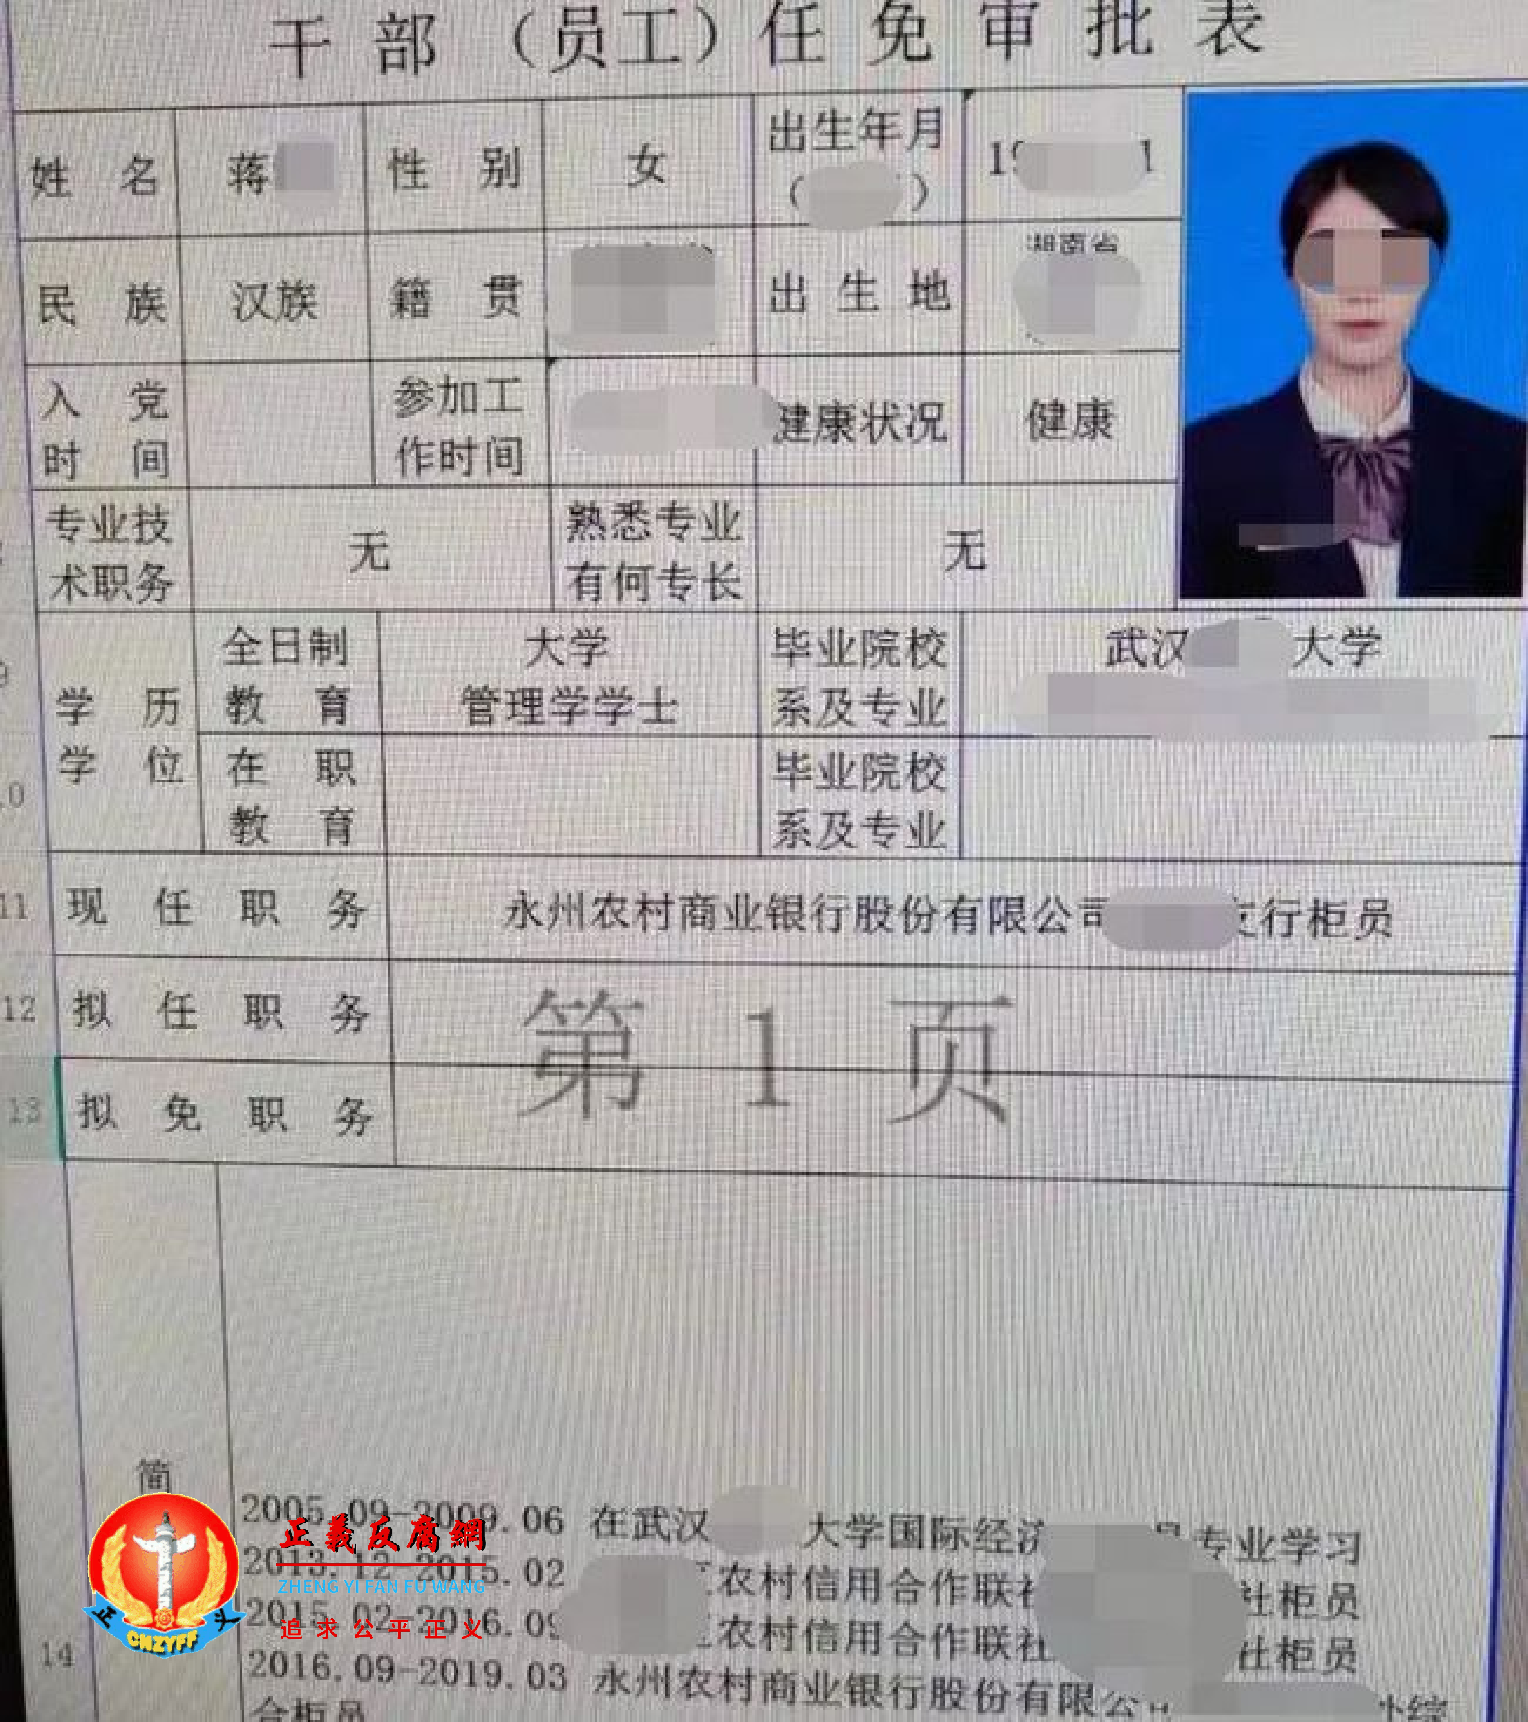 湖南永州农村商业银行柜员蒋雪的信息和照片也被扒了出来。.png